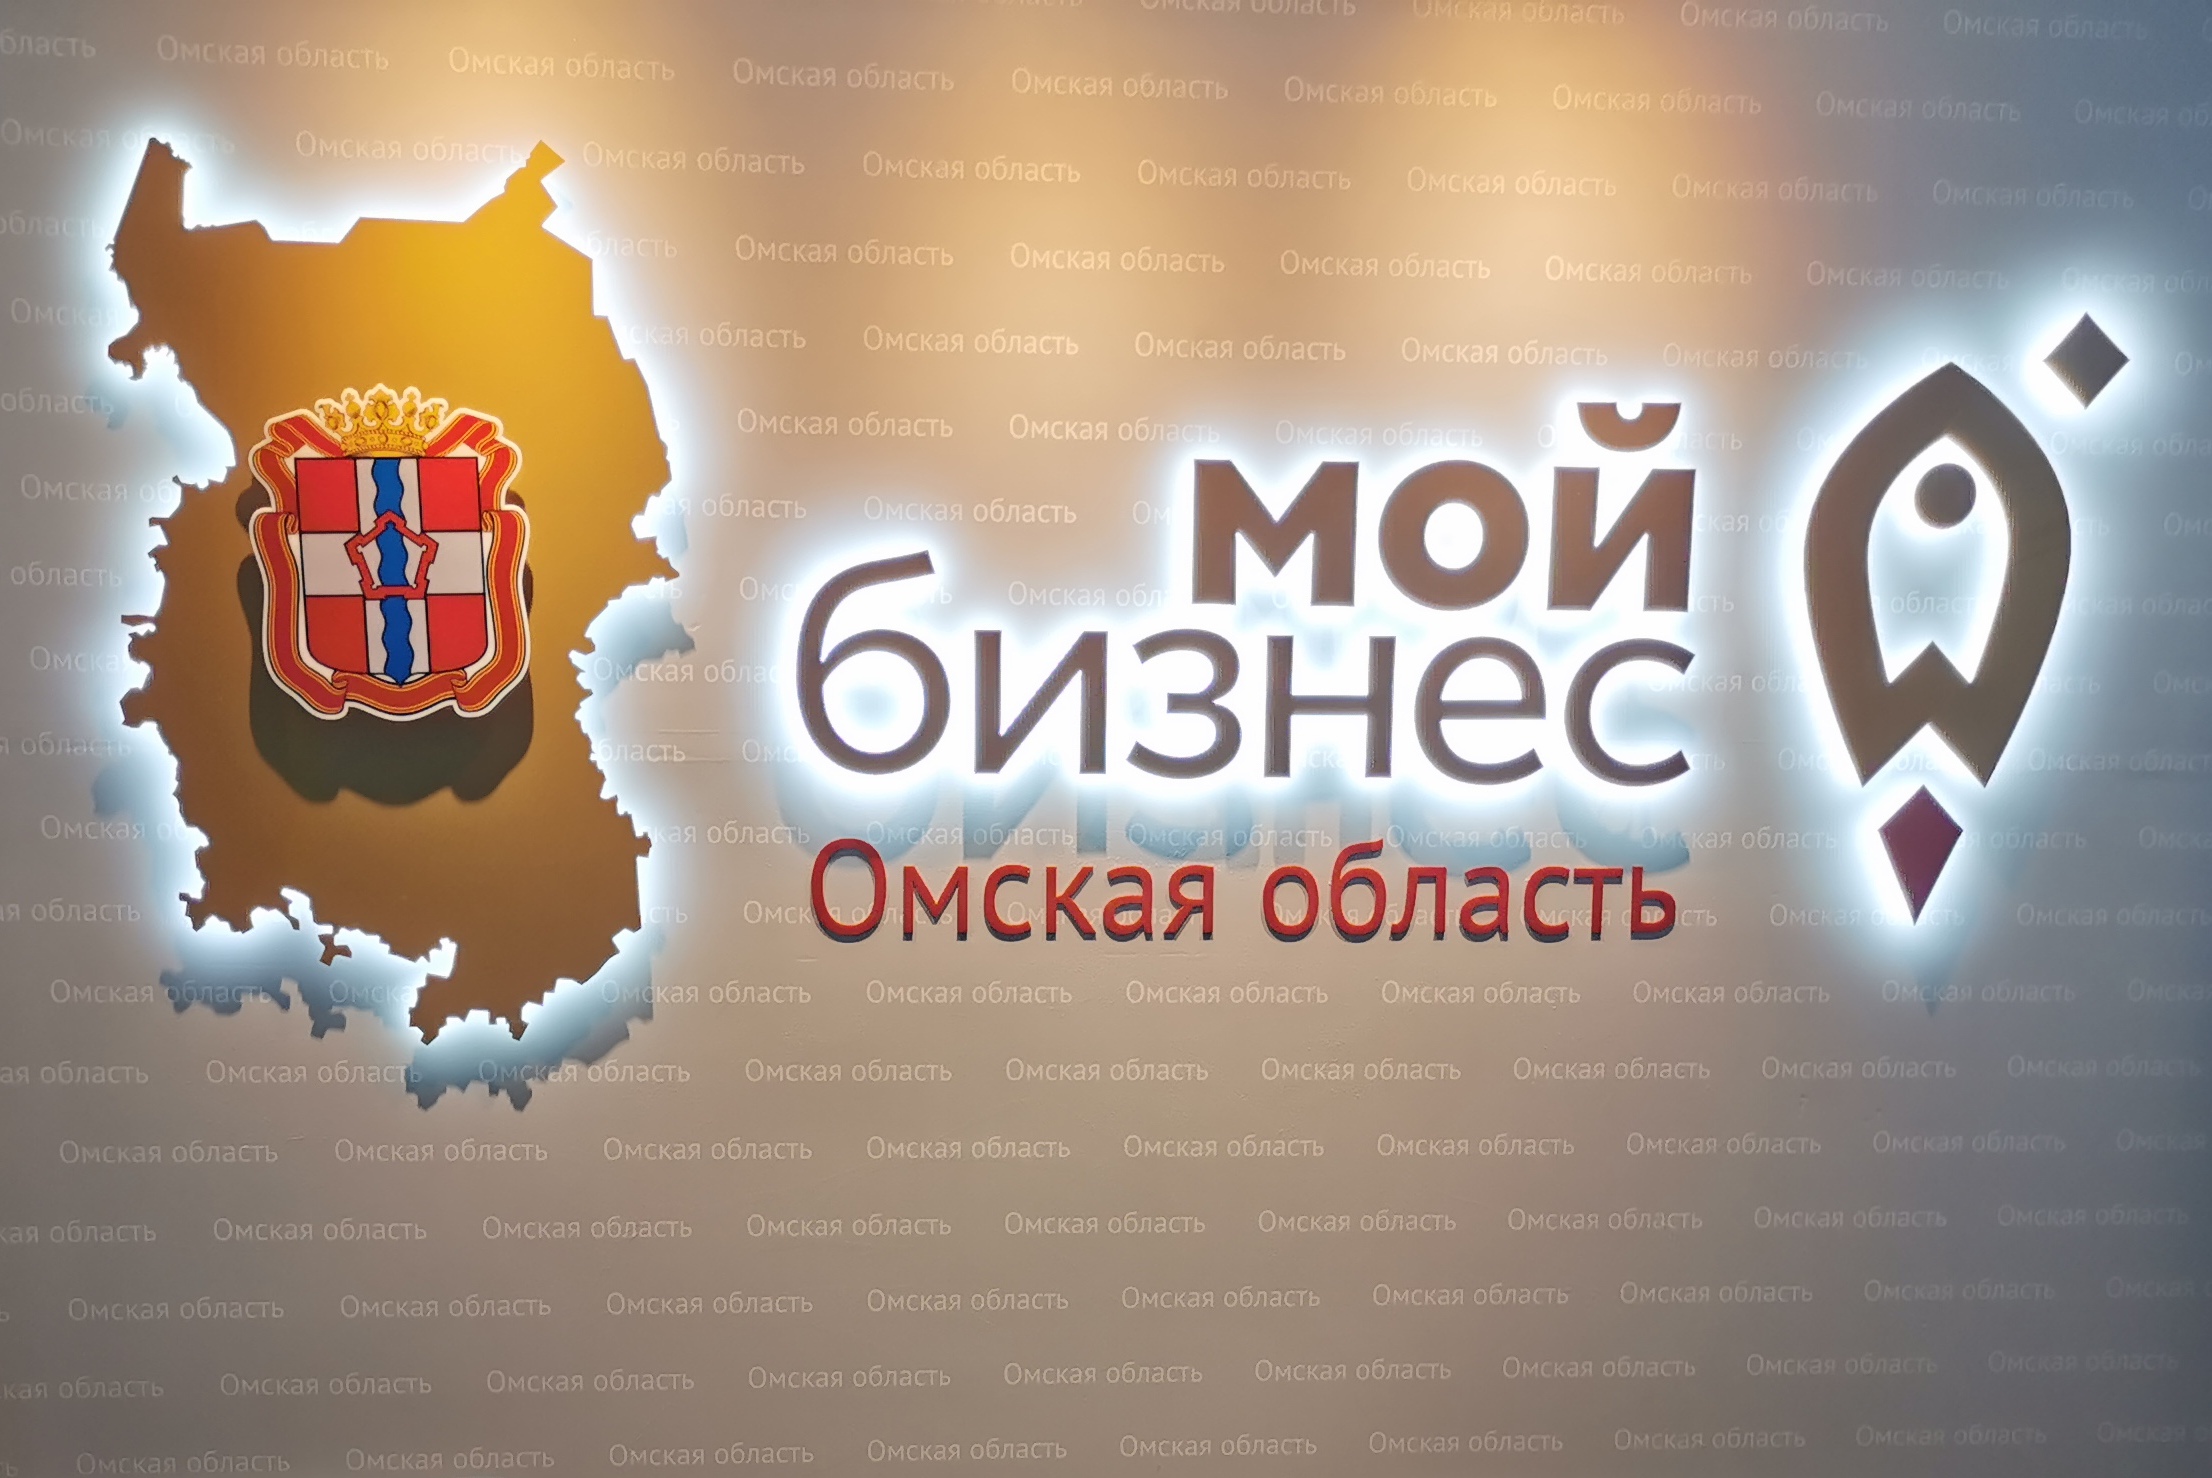 15 лет назад в Омской области выдано первое поручительство для предпринимателя от Регионального гарантийного центра.